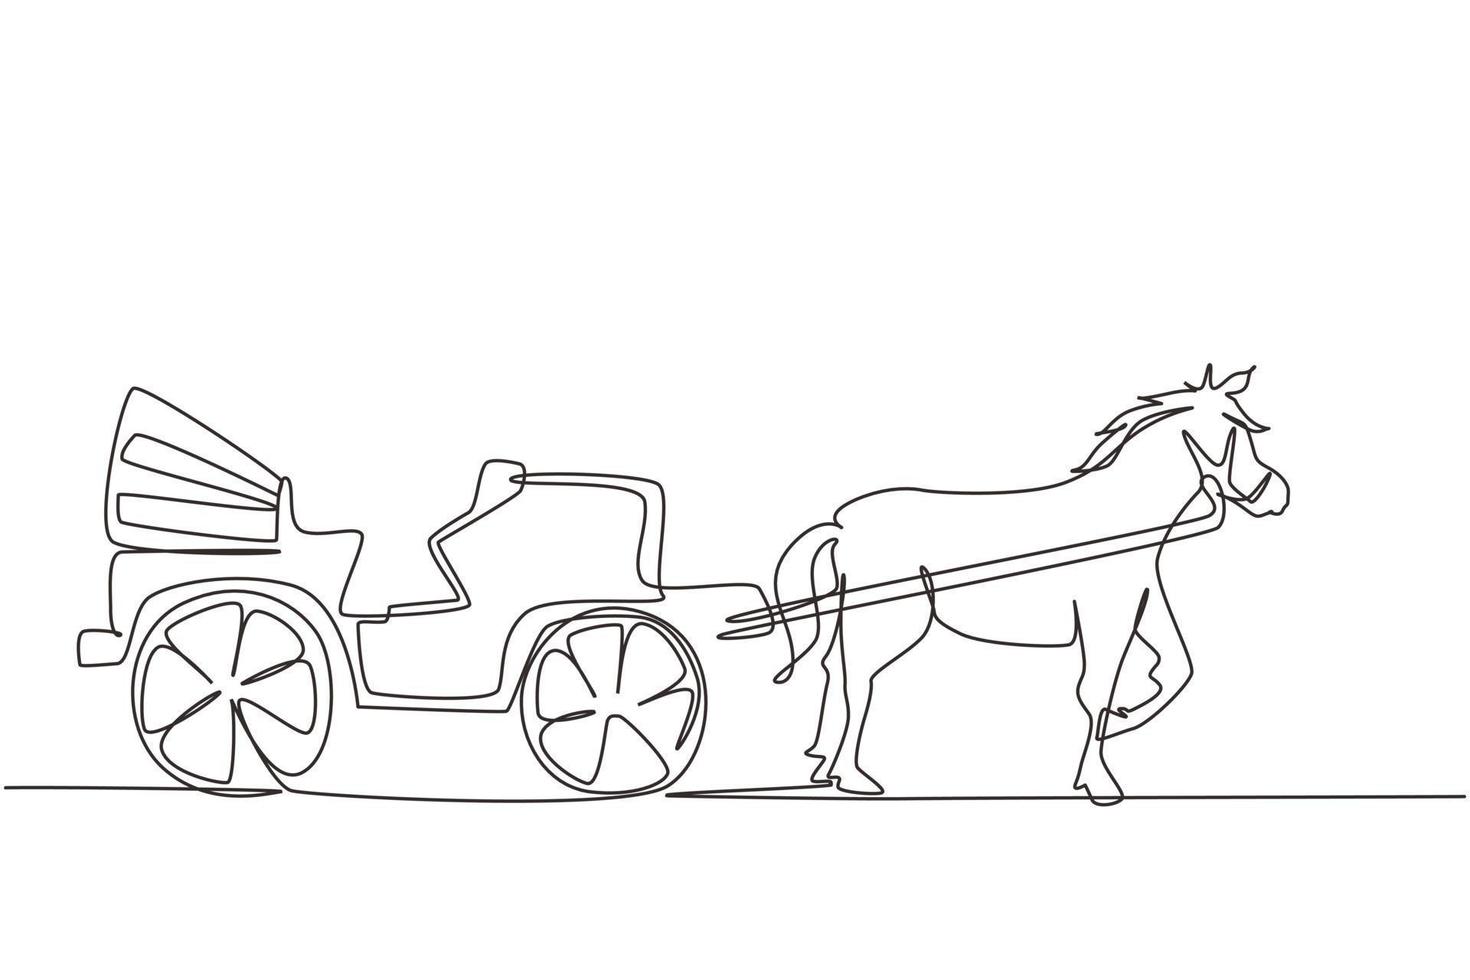 enda en rad ritning vintage transport, häst dra vagn. gammal vagn med häst, en häst drar en vagn efter sig. modern kontinuerlig linje rita design grafisk vektorillustration vektor